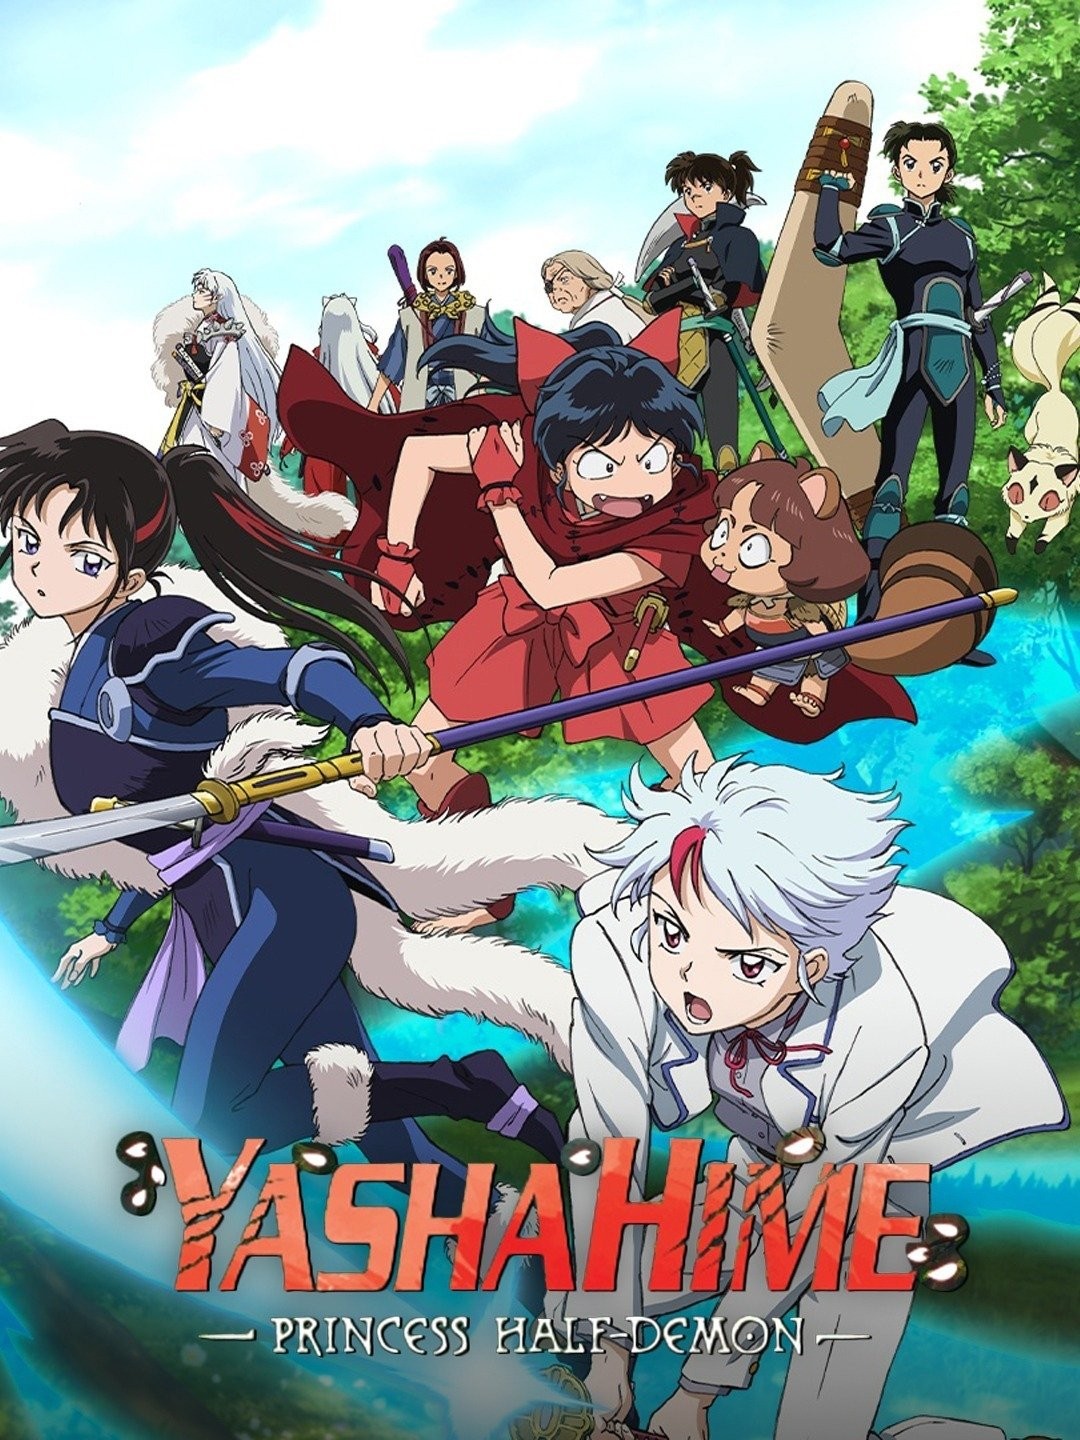 Yashahime: Princess Half-Demon - Season 1 - Part 1 - Limited